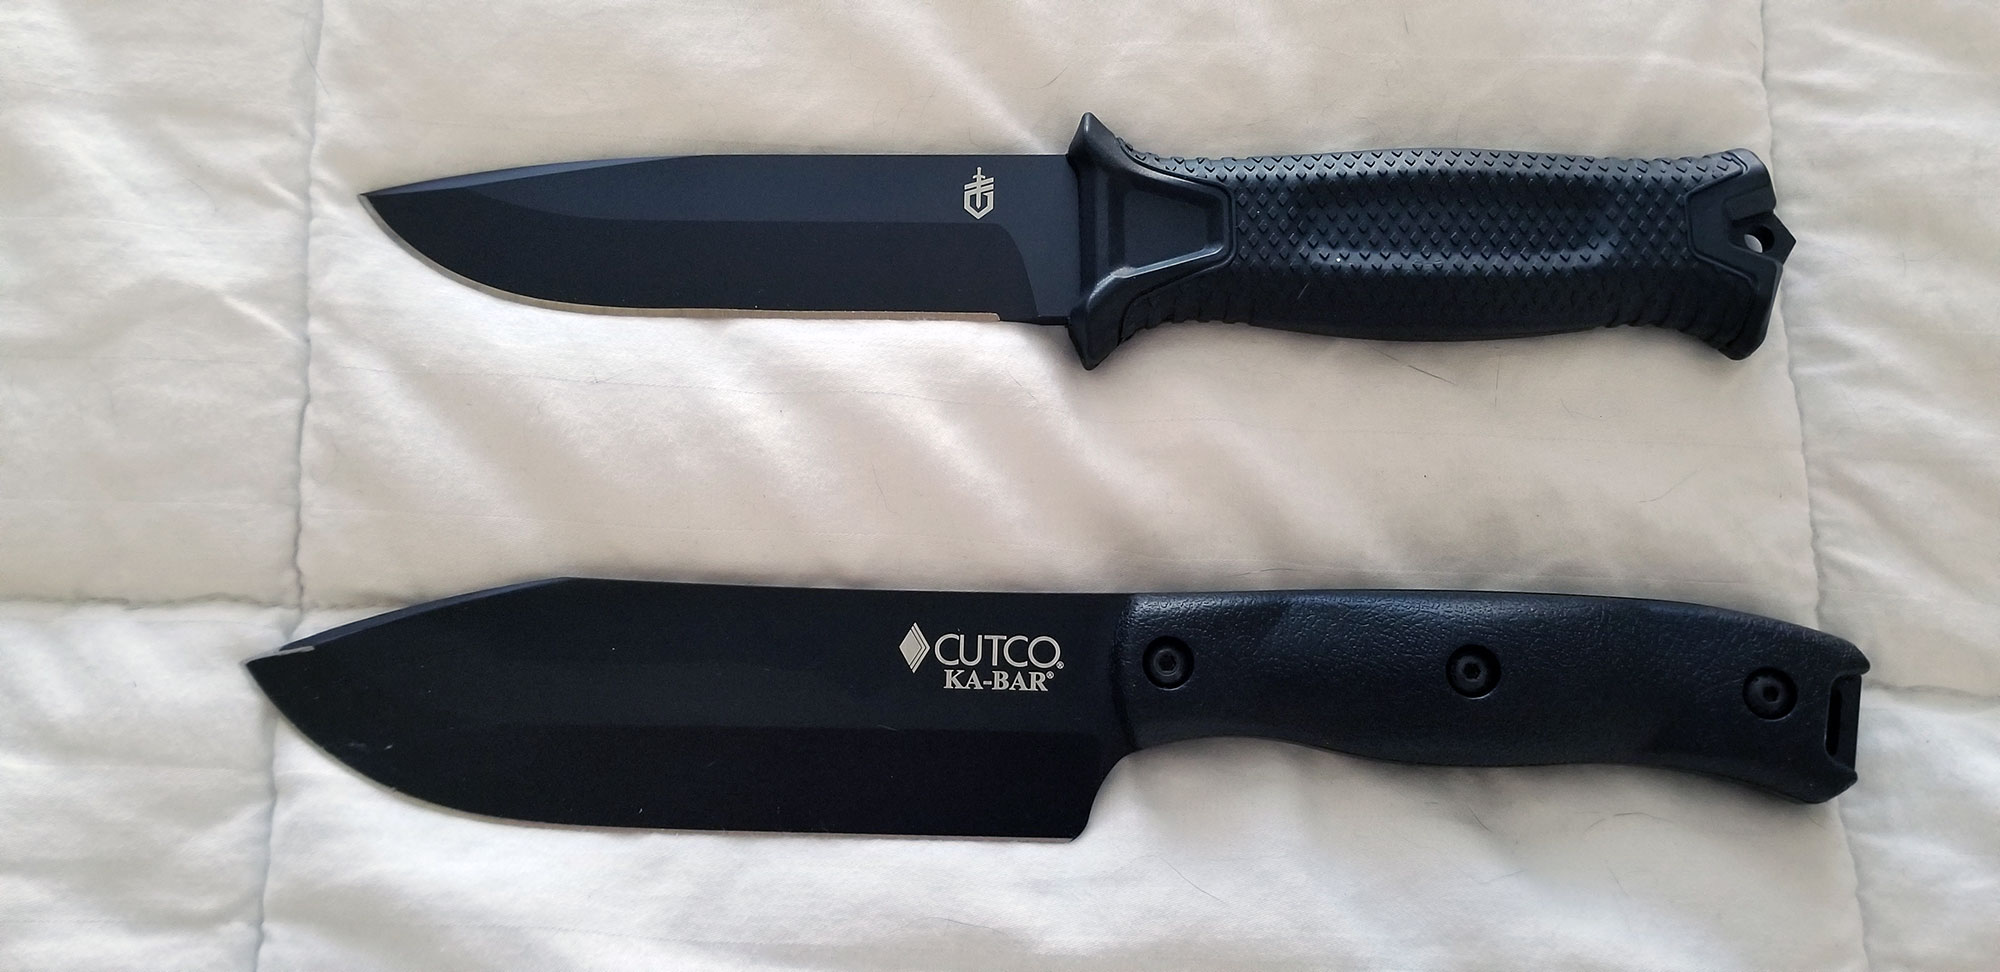 Cutco Hunting Knife